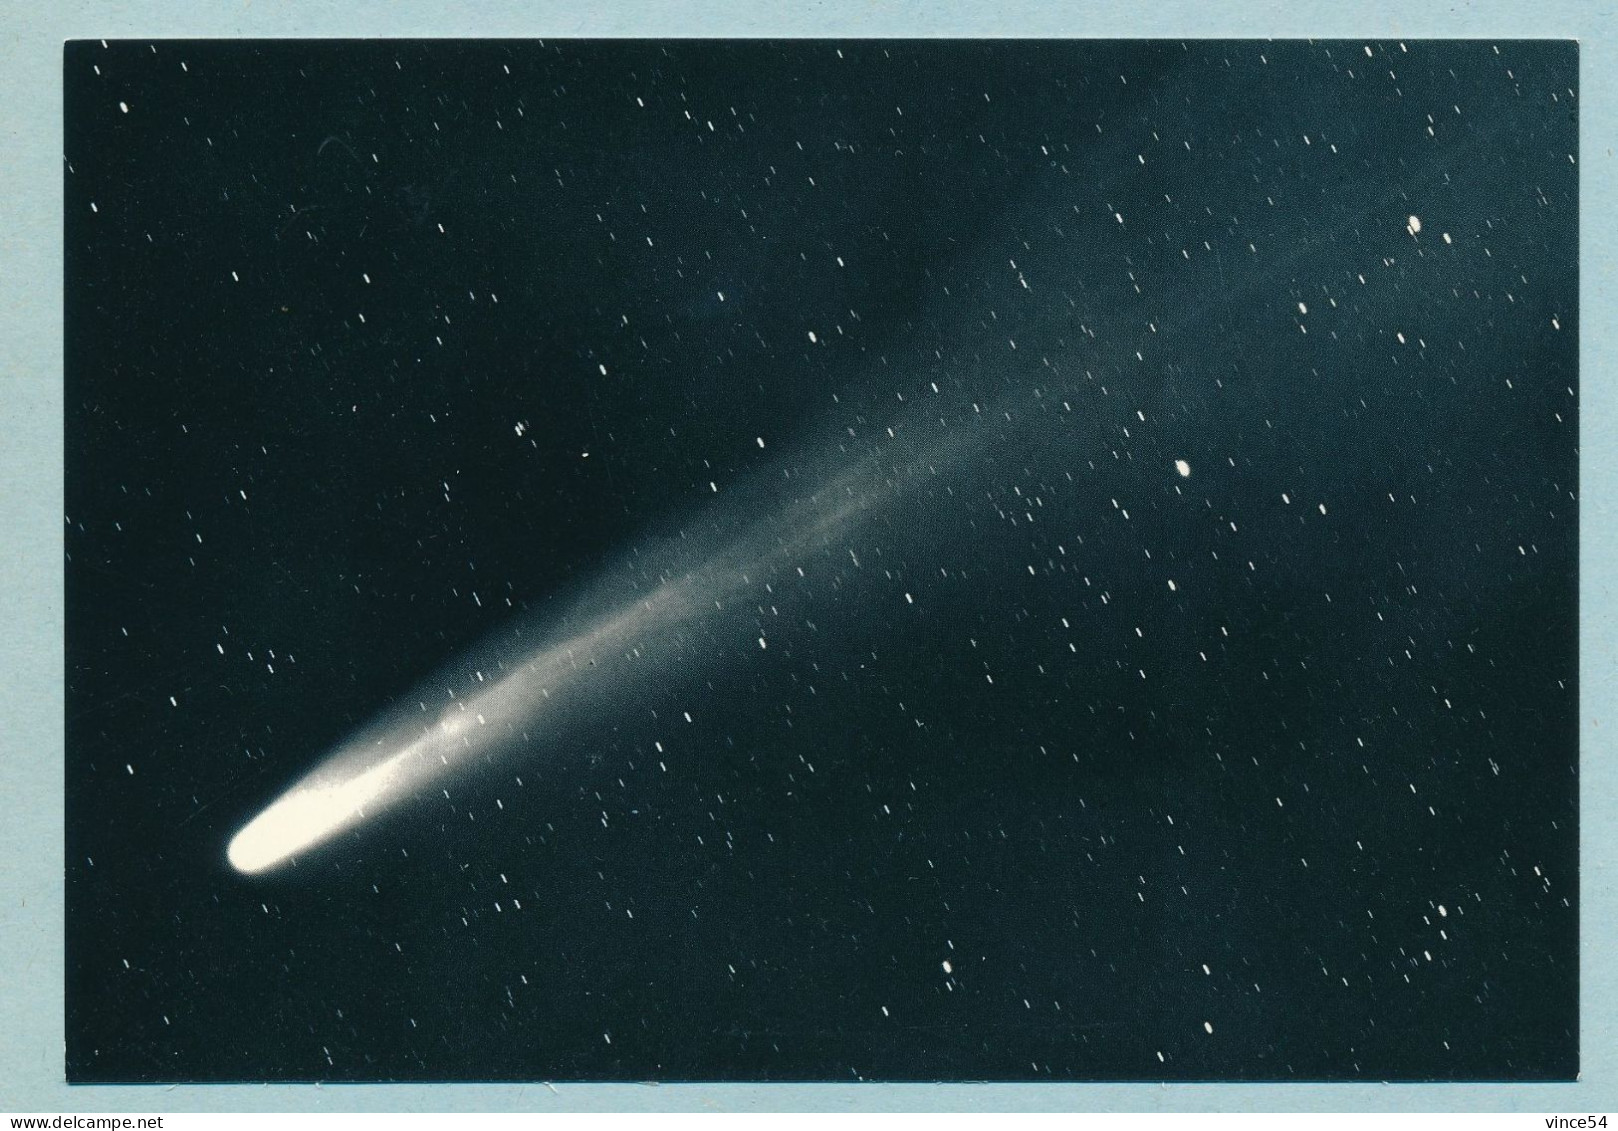 OBSERVATOIRE DE NICE - Comète BENNETT (1969 I) - Cliché Du 2 Avril 1970 B. Milet - Astronomy